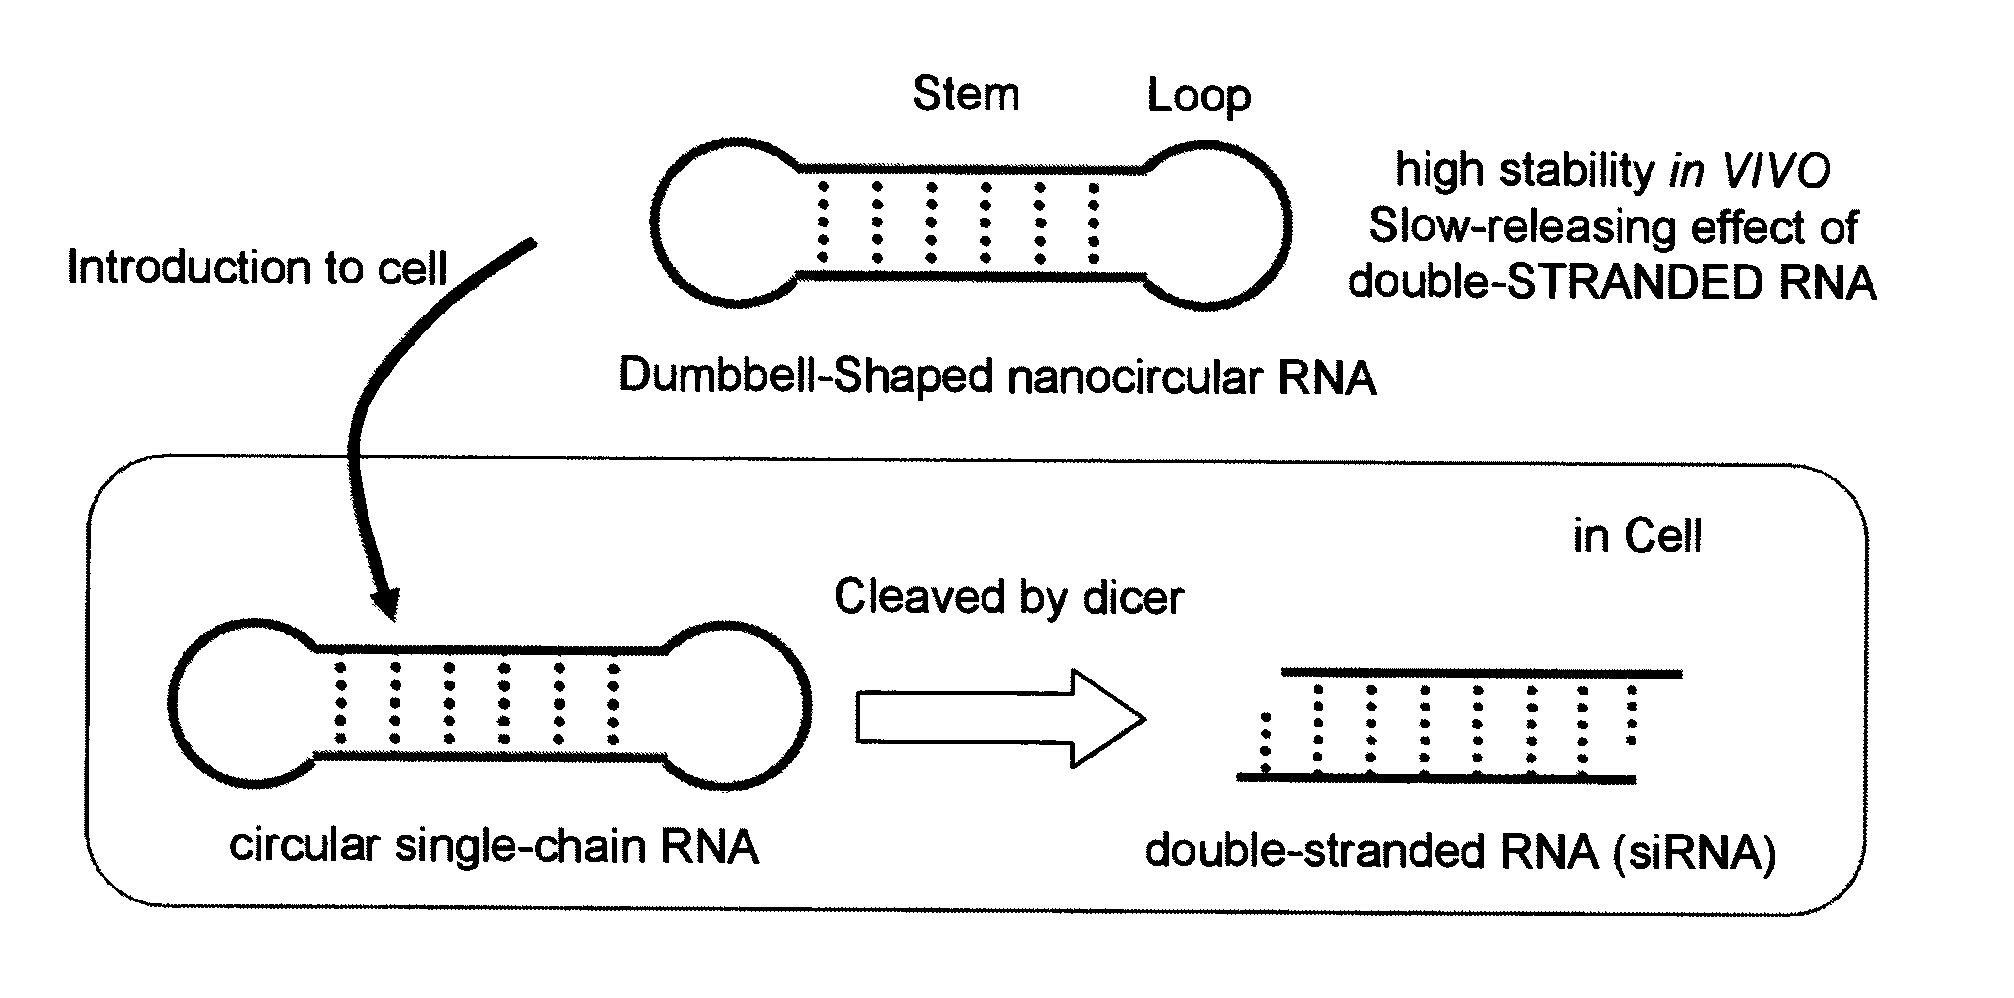 Single-chain circular RNA and method of producing the same